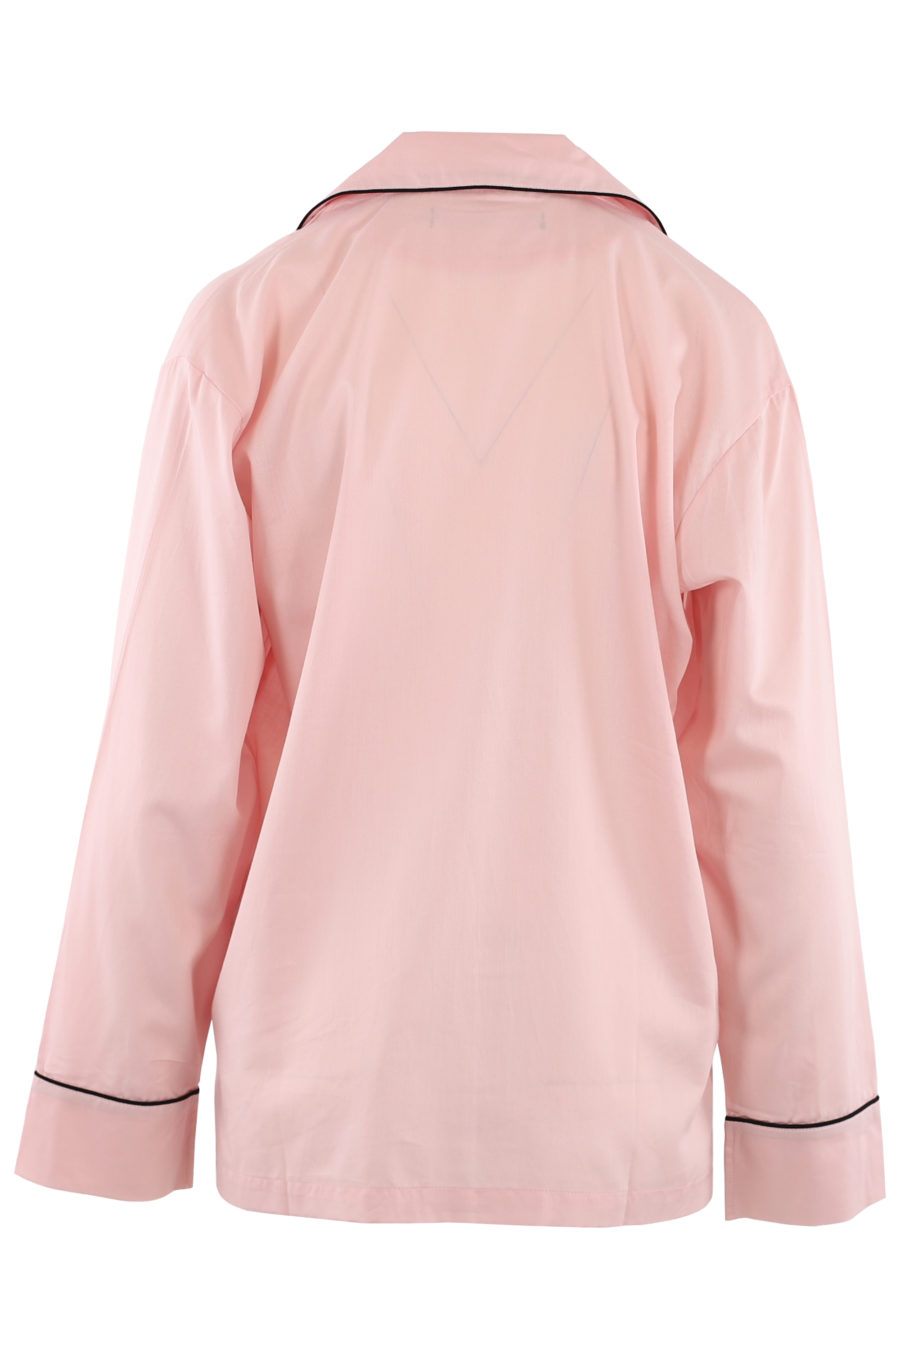 Conjunto de pijama de color rosa - 3f8c2fc6e18a9ec06a08c97c99cec22df9f796b5